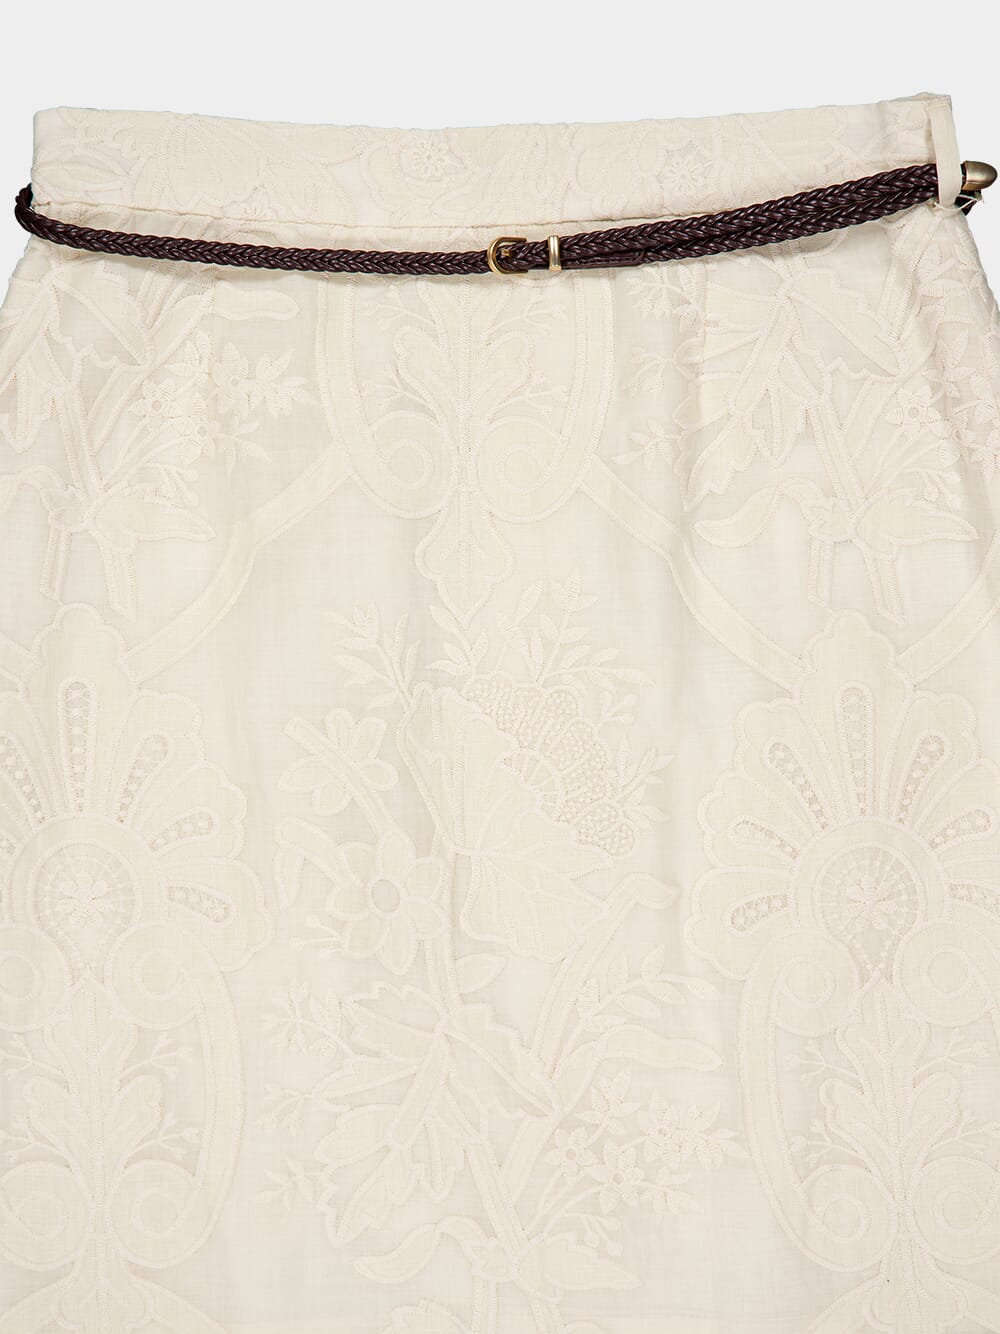 Ottie Embroidered Linen Skirt